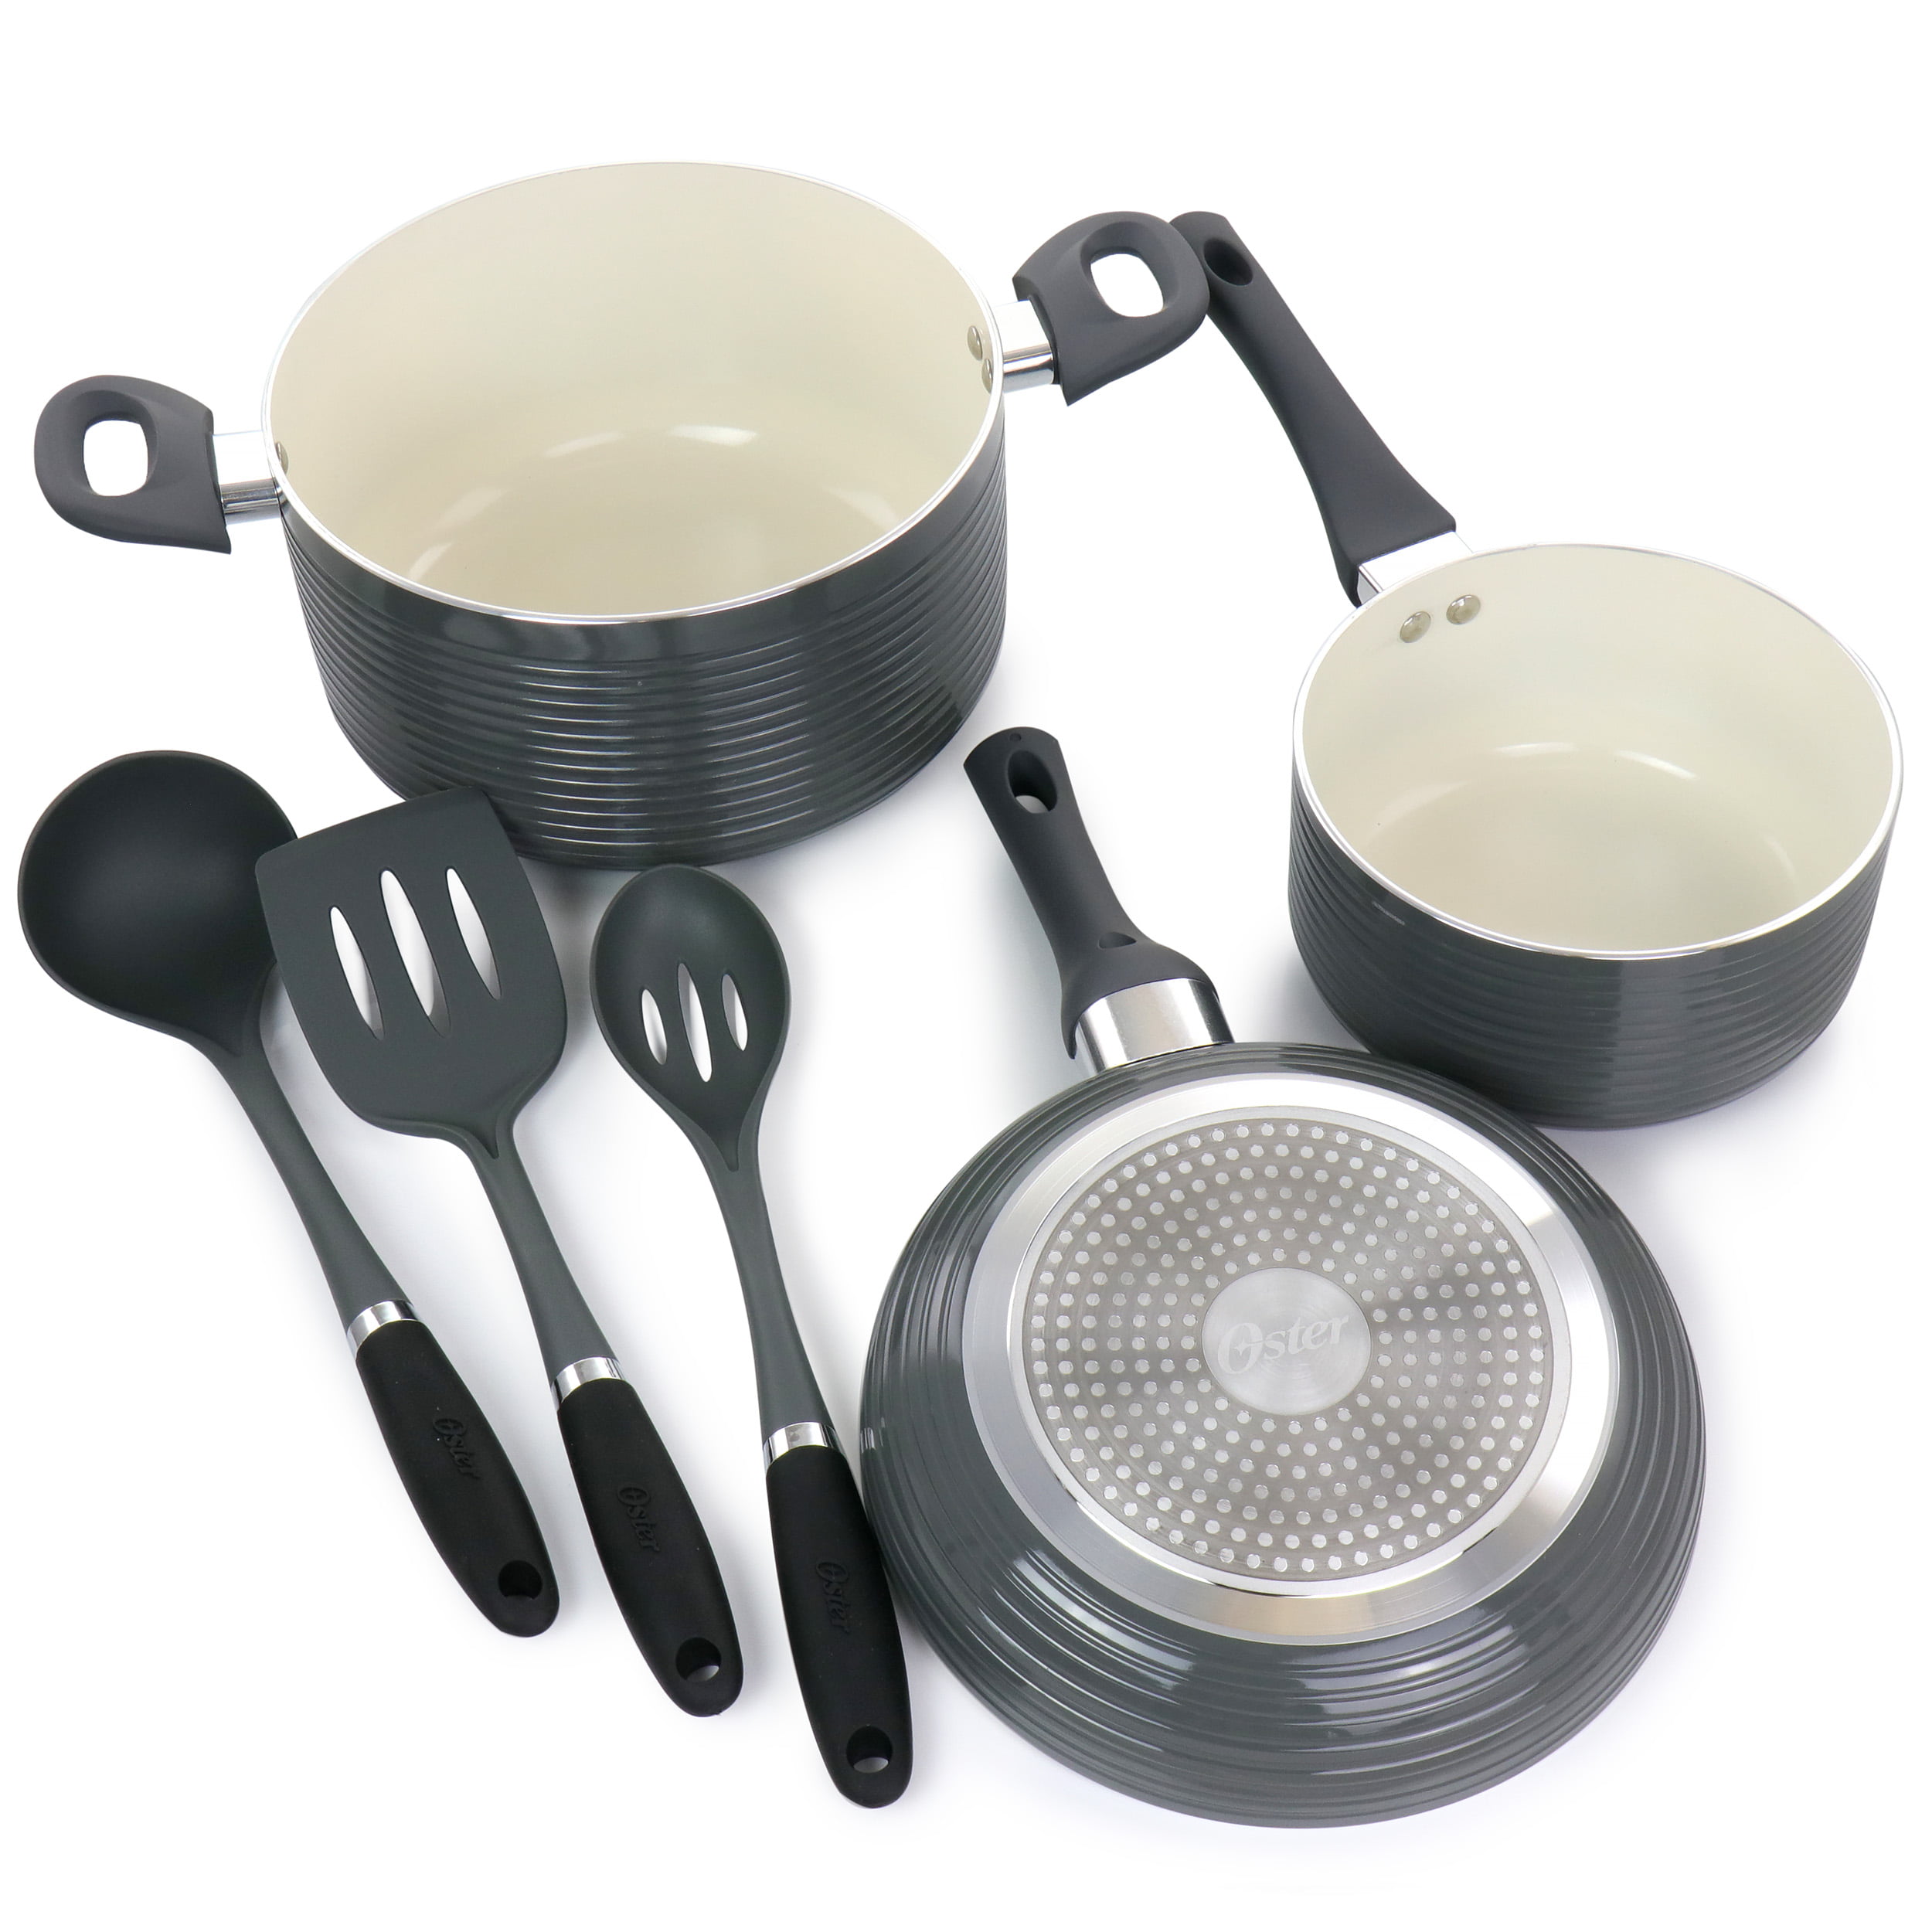 Mosta Aluminum Alloy Non-Stick Cookware Set, Pots and Pans - 8-Piece Set